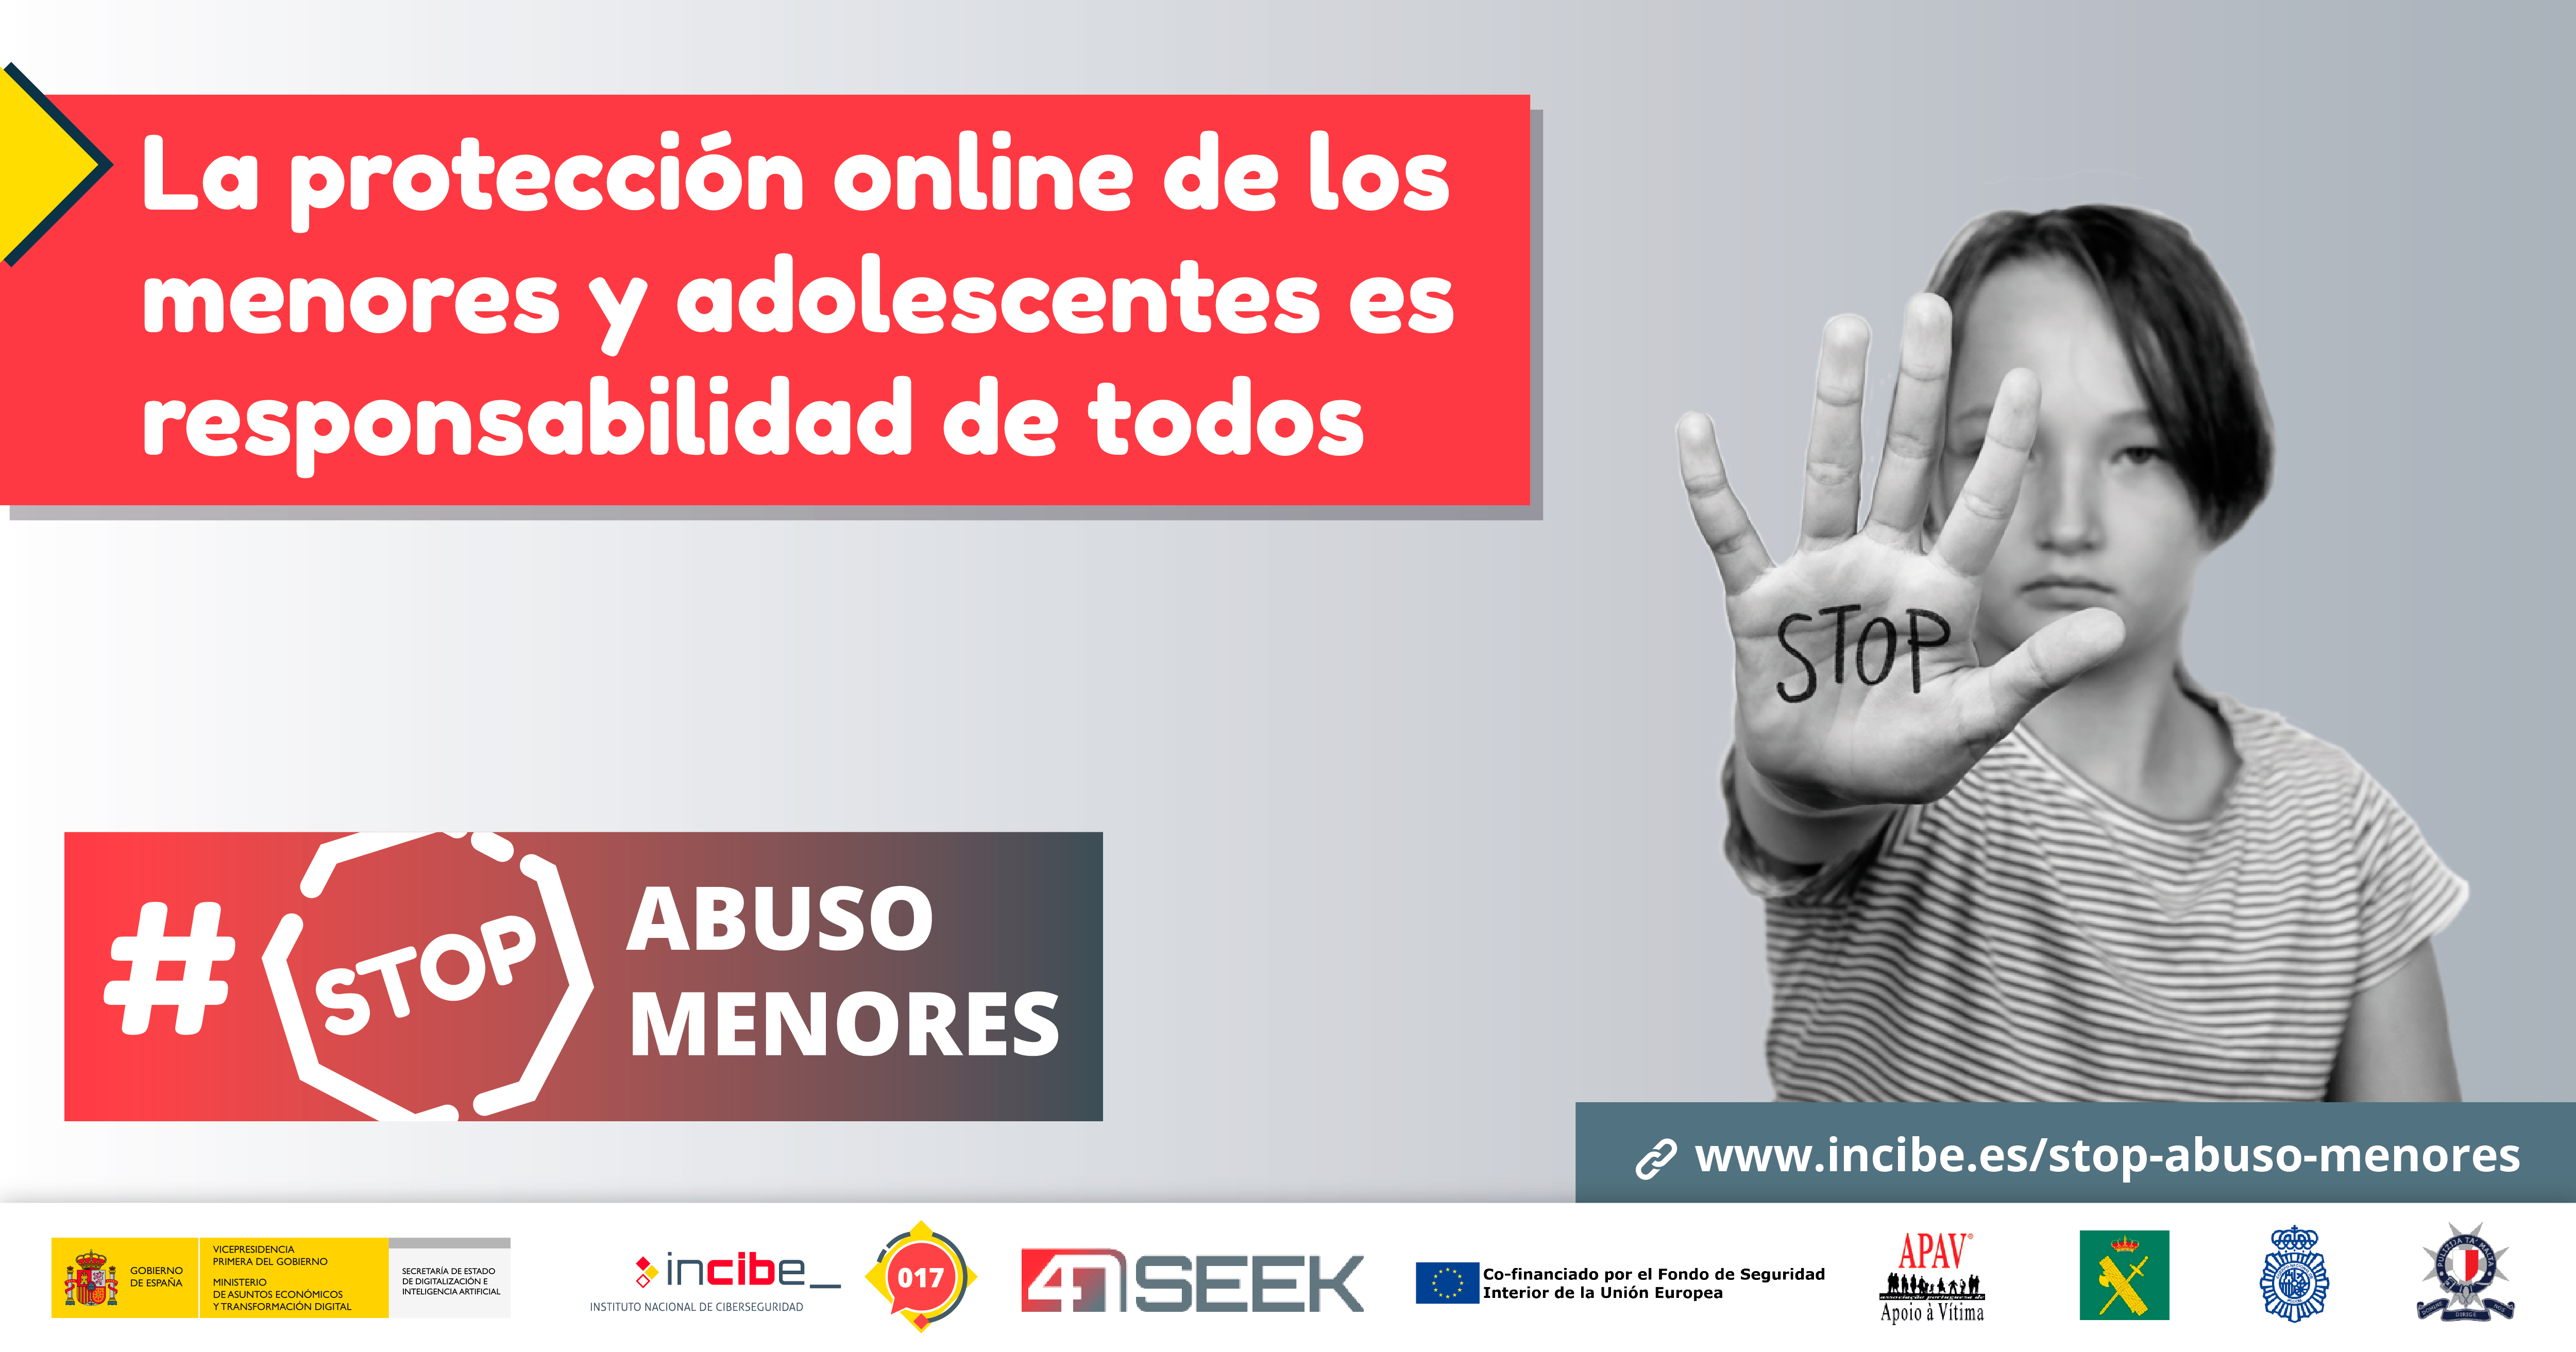 La protección online de los menores y adolescentes es responsabilidad de todos #StopAbusoMenores